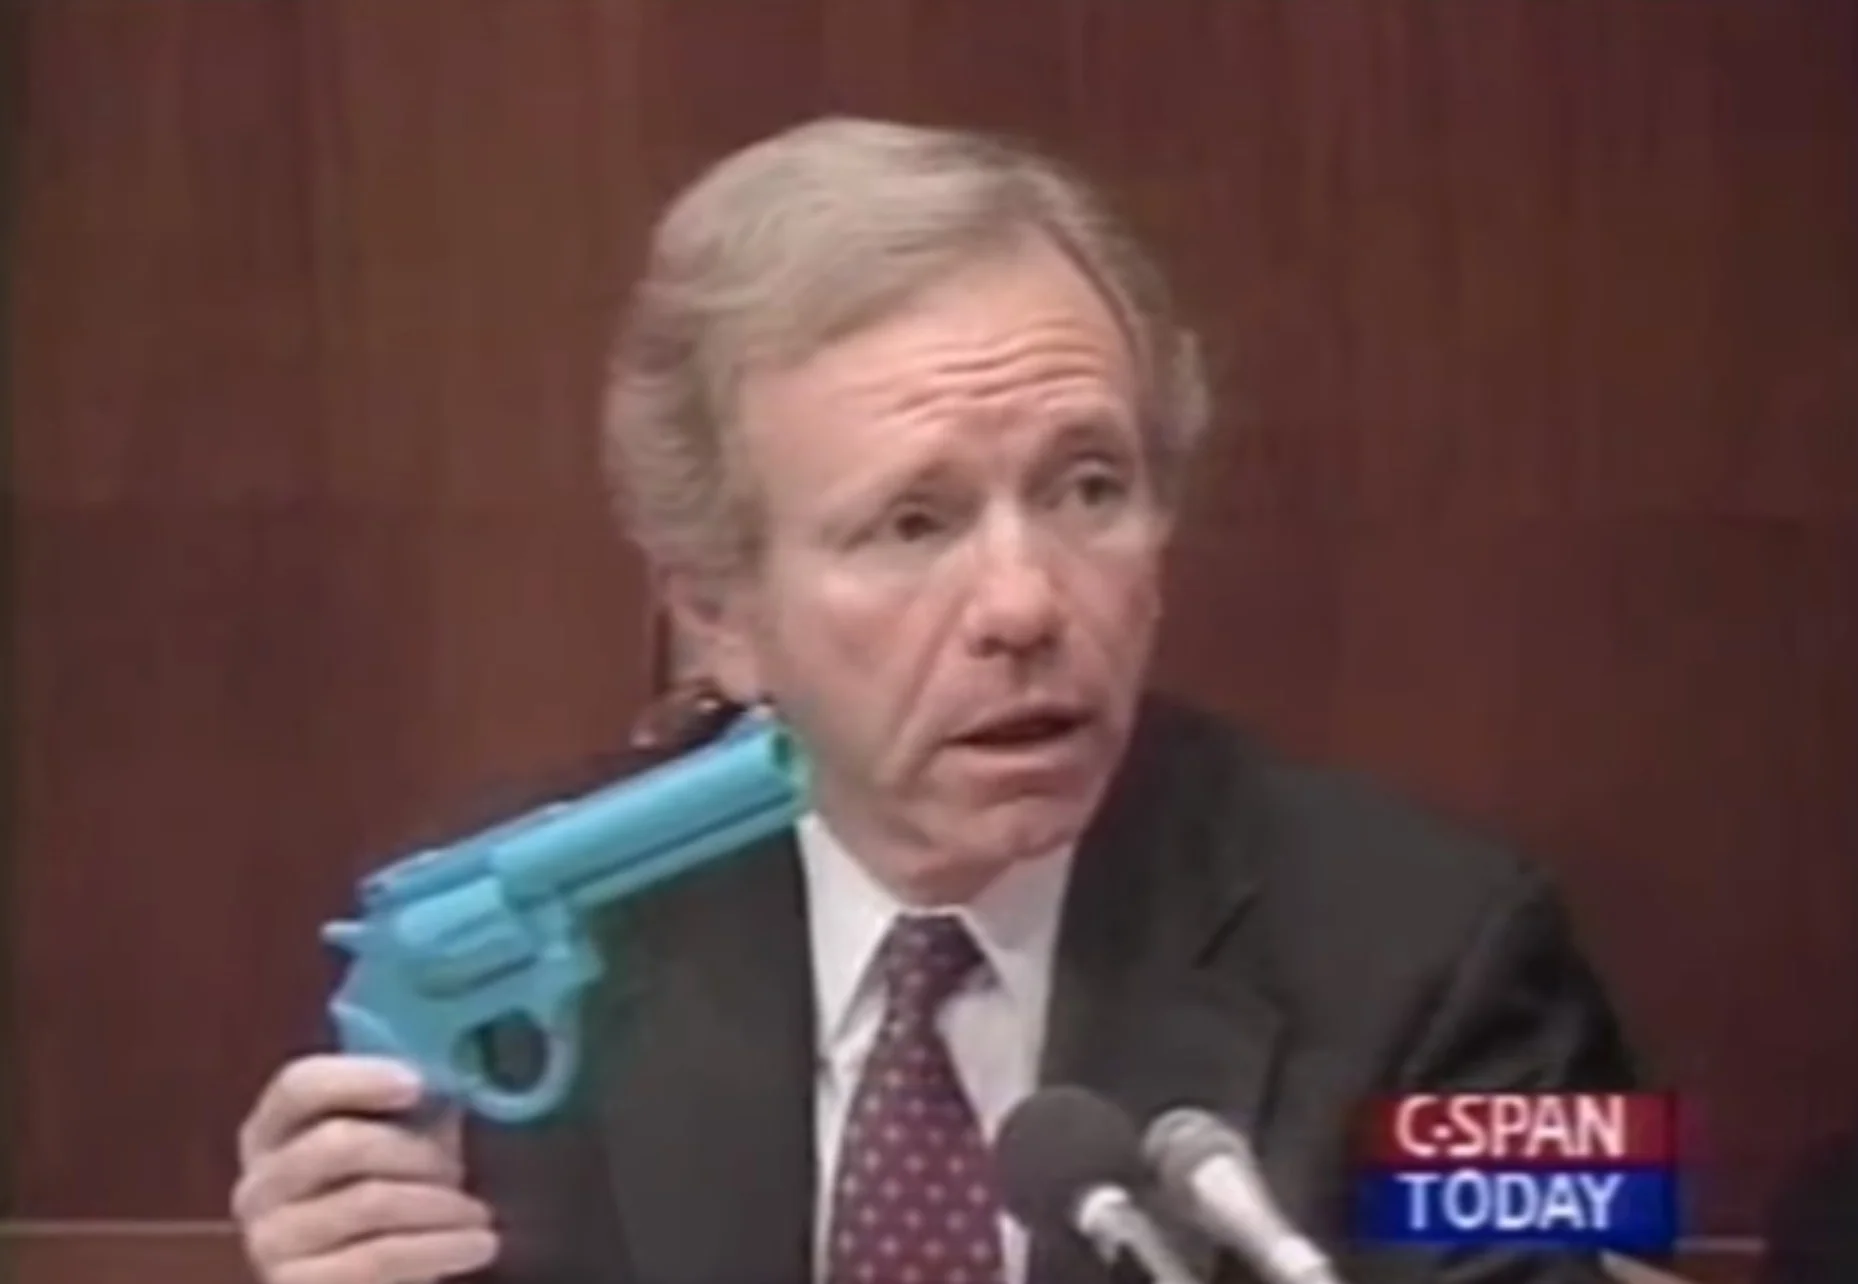 Джо Либерма показывает участникам пластмассовый световой пистолет на слушаниях 1993 года